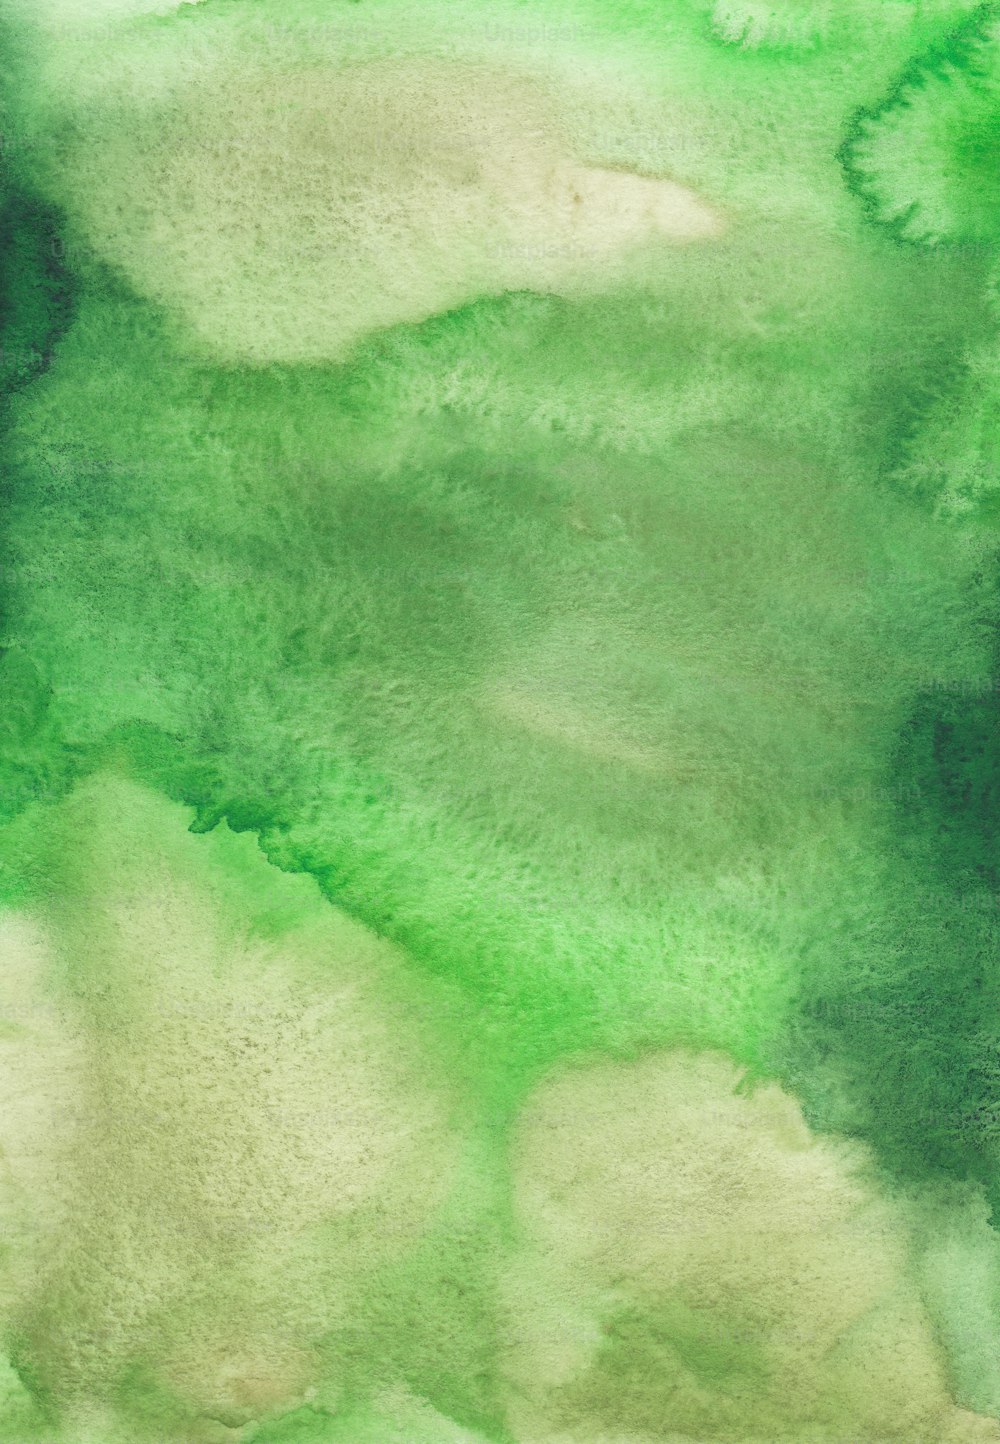 ein Aquarell von grünen und weißen Wolken